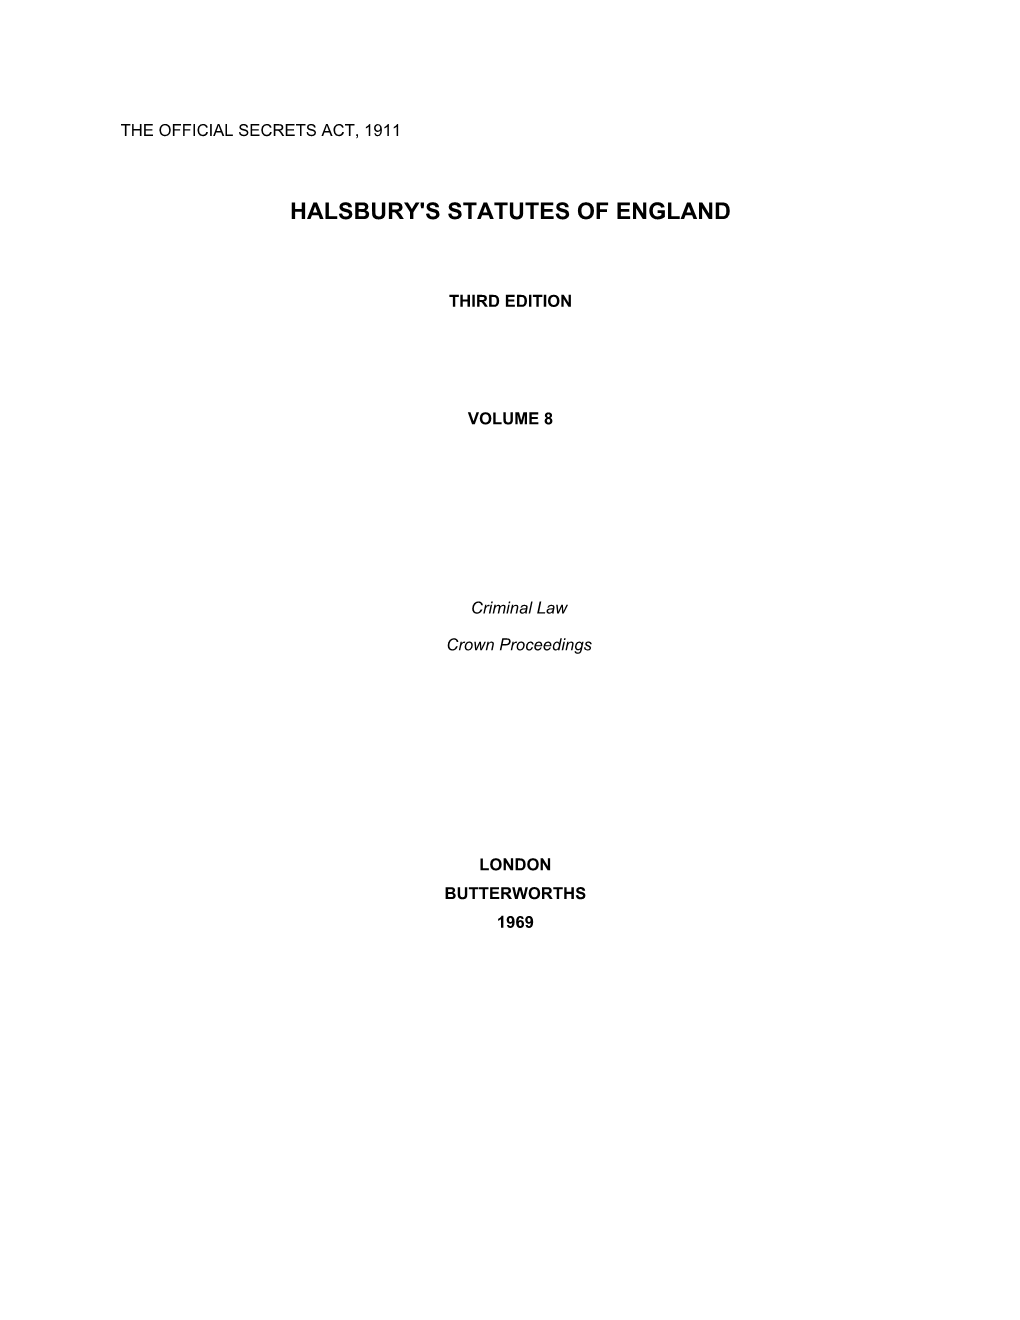 Halsbury's Statutes of England